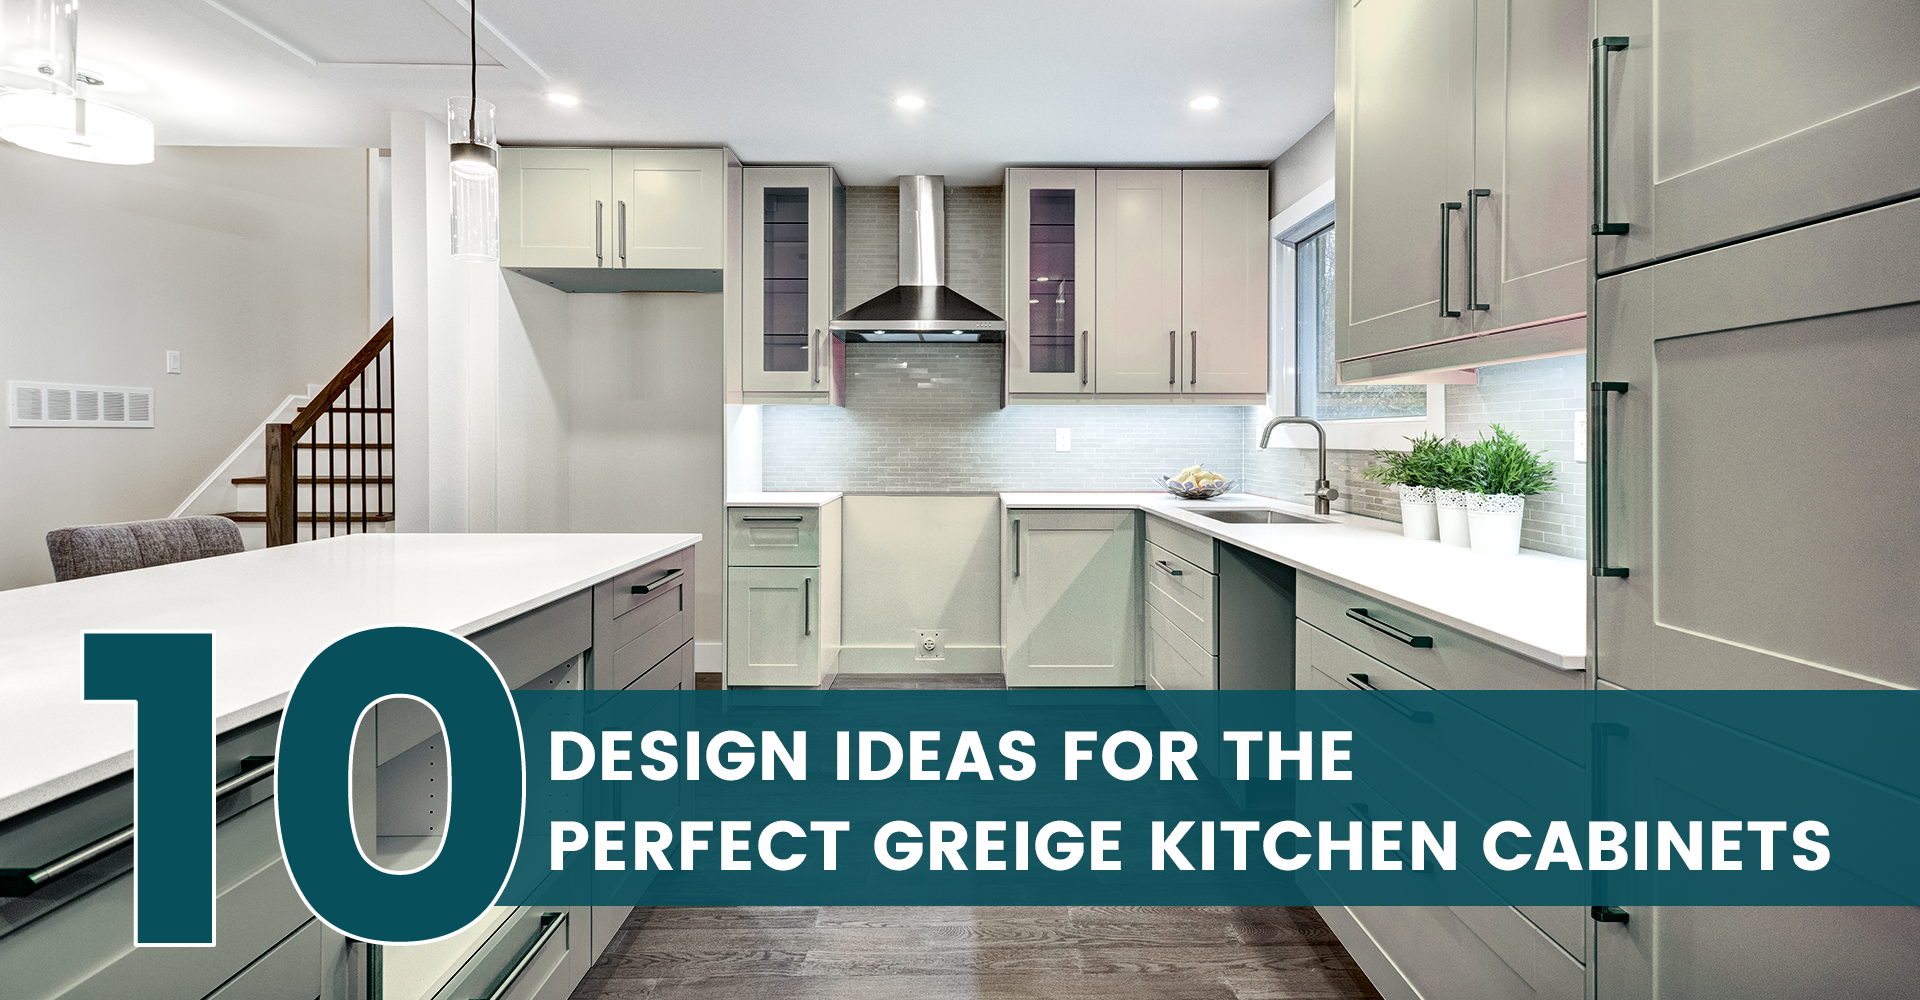 Greige Cabinets + Brass Hardware  Greige kitchen, White kitchen appliances,  Beige kitchen cabinets